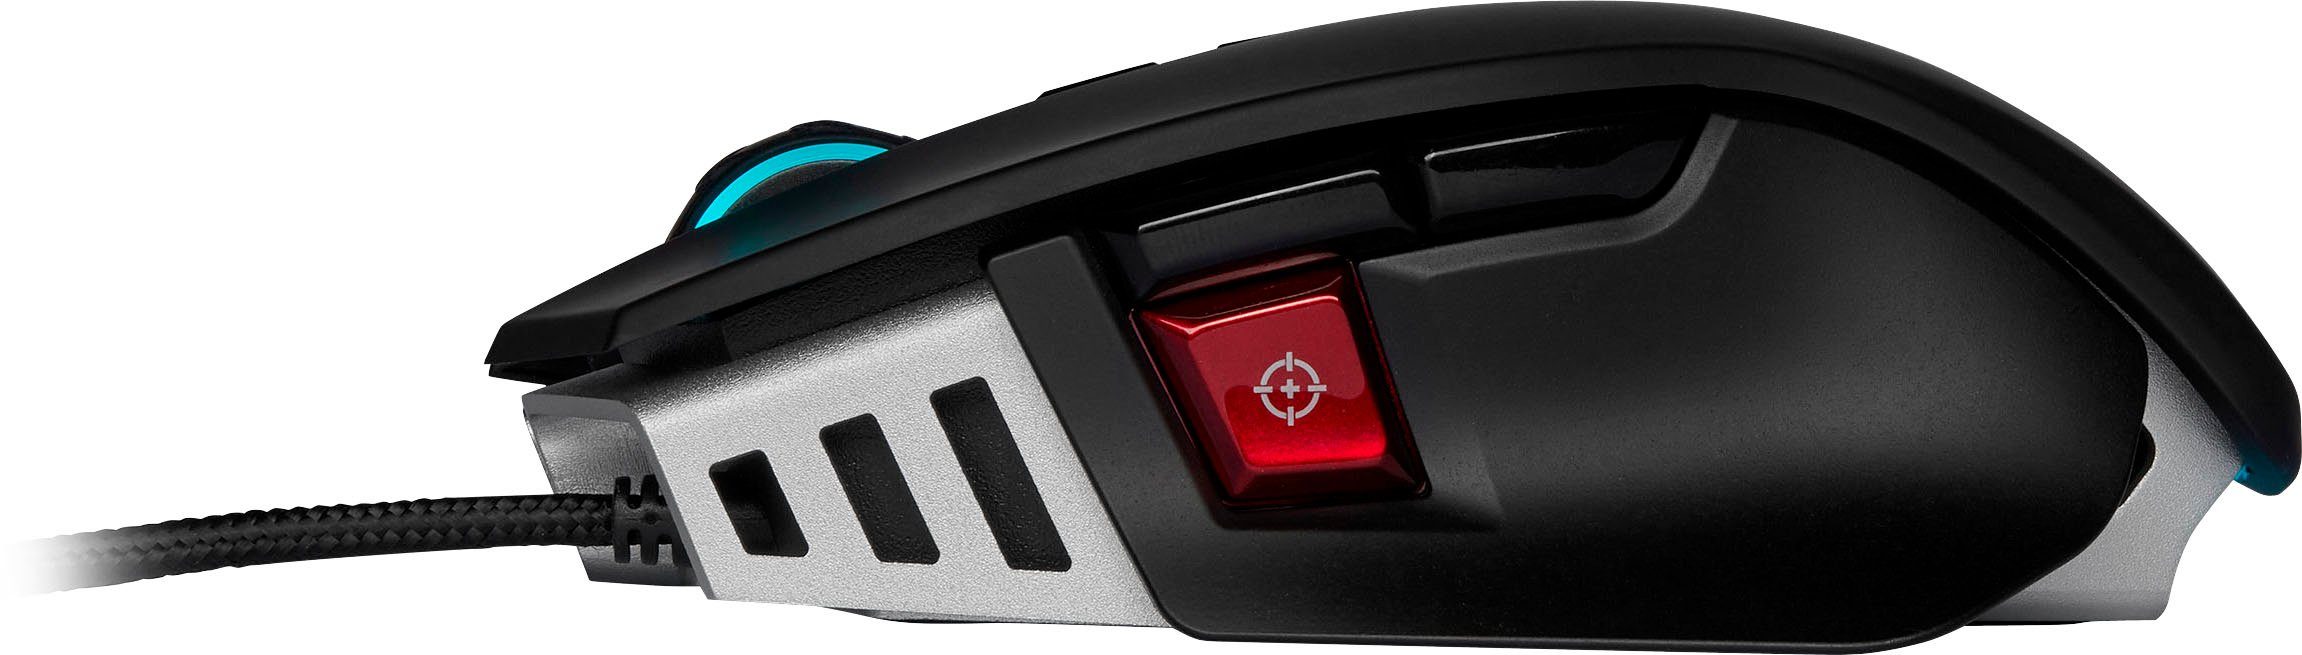 Mouse Gaming-Maus (kabelgebunden) ELITE RGB M65 Corsair Gaming